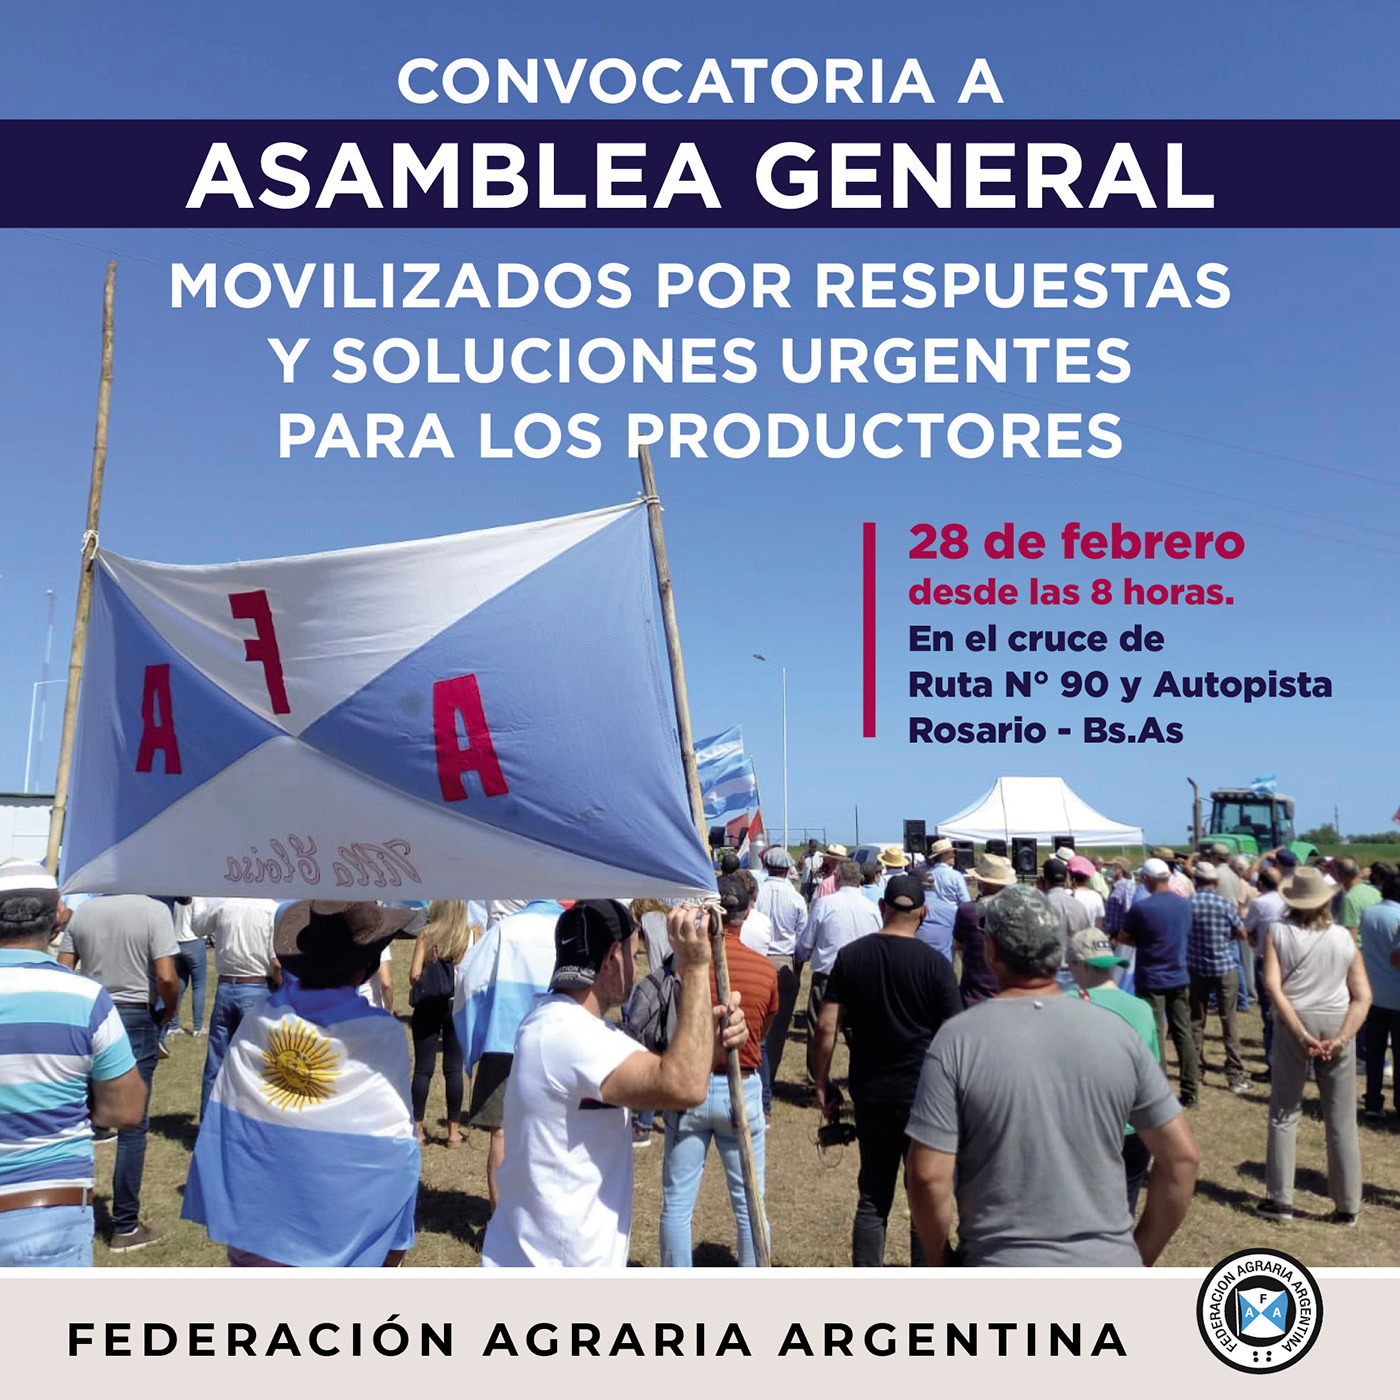 Federación Agraria se movilizará el 28F y realiza asamblea en Villa Constitución